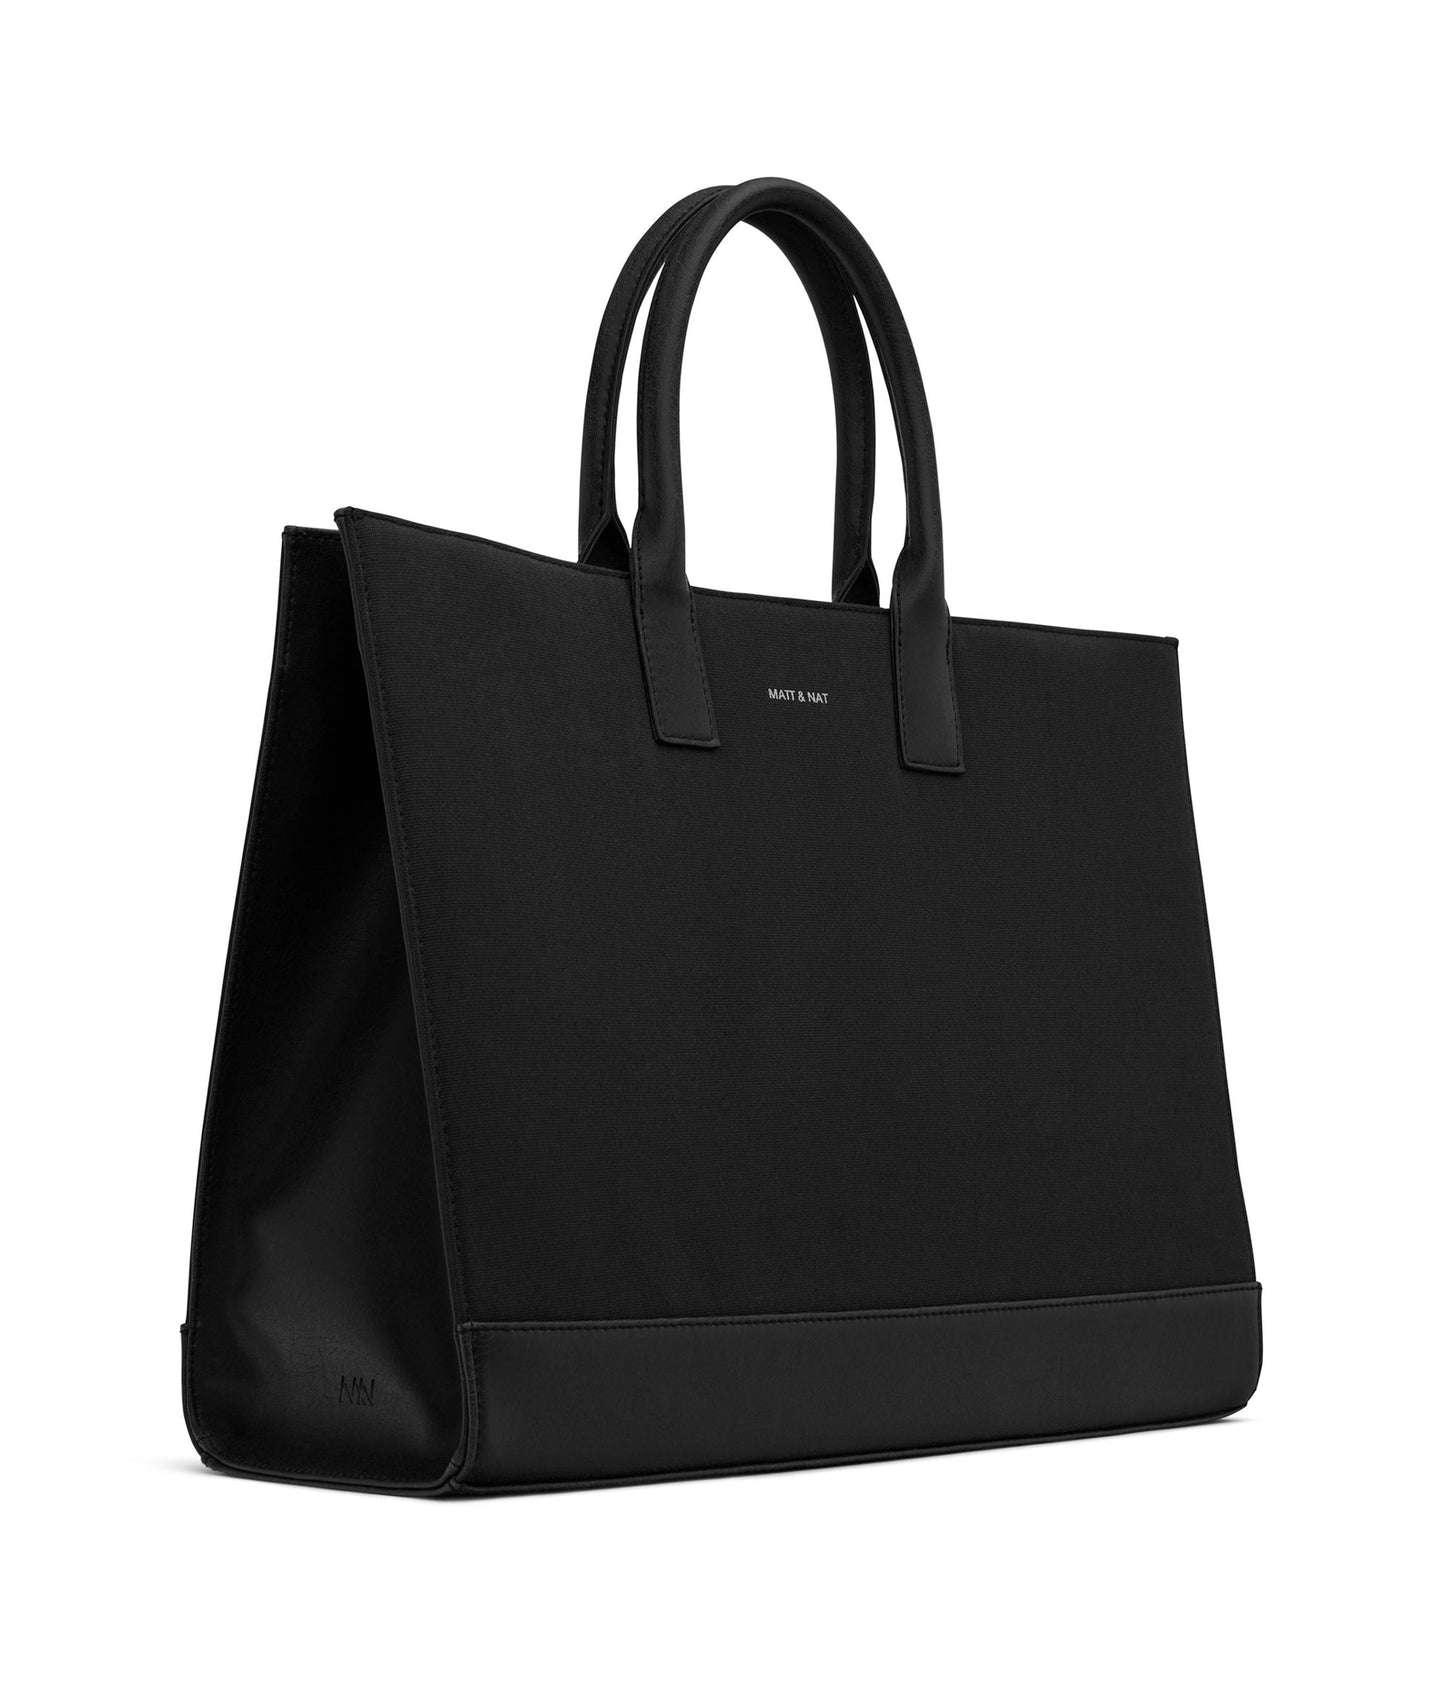 JOI Canvas Tote Bag - Canvas | Color: Black - variant::black